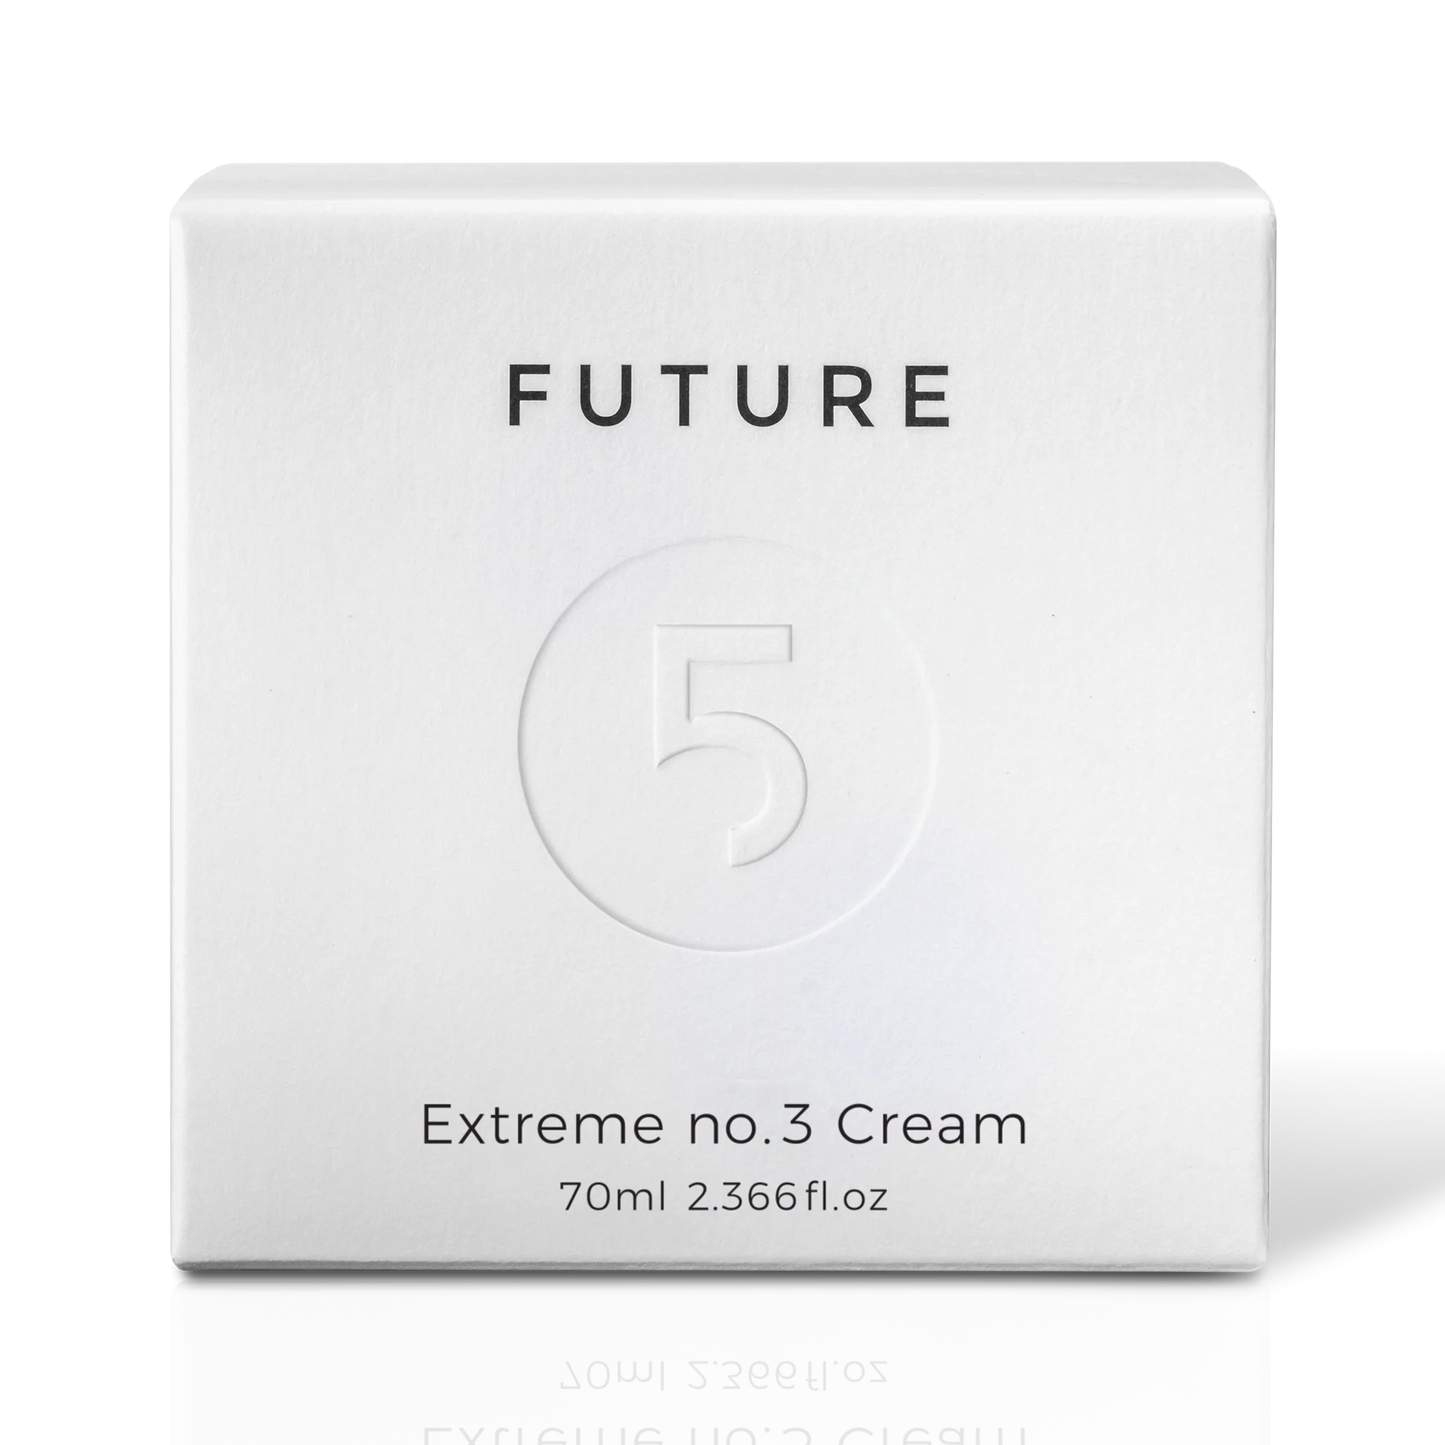 Extreme No. 3 Cream